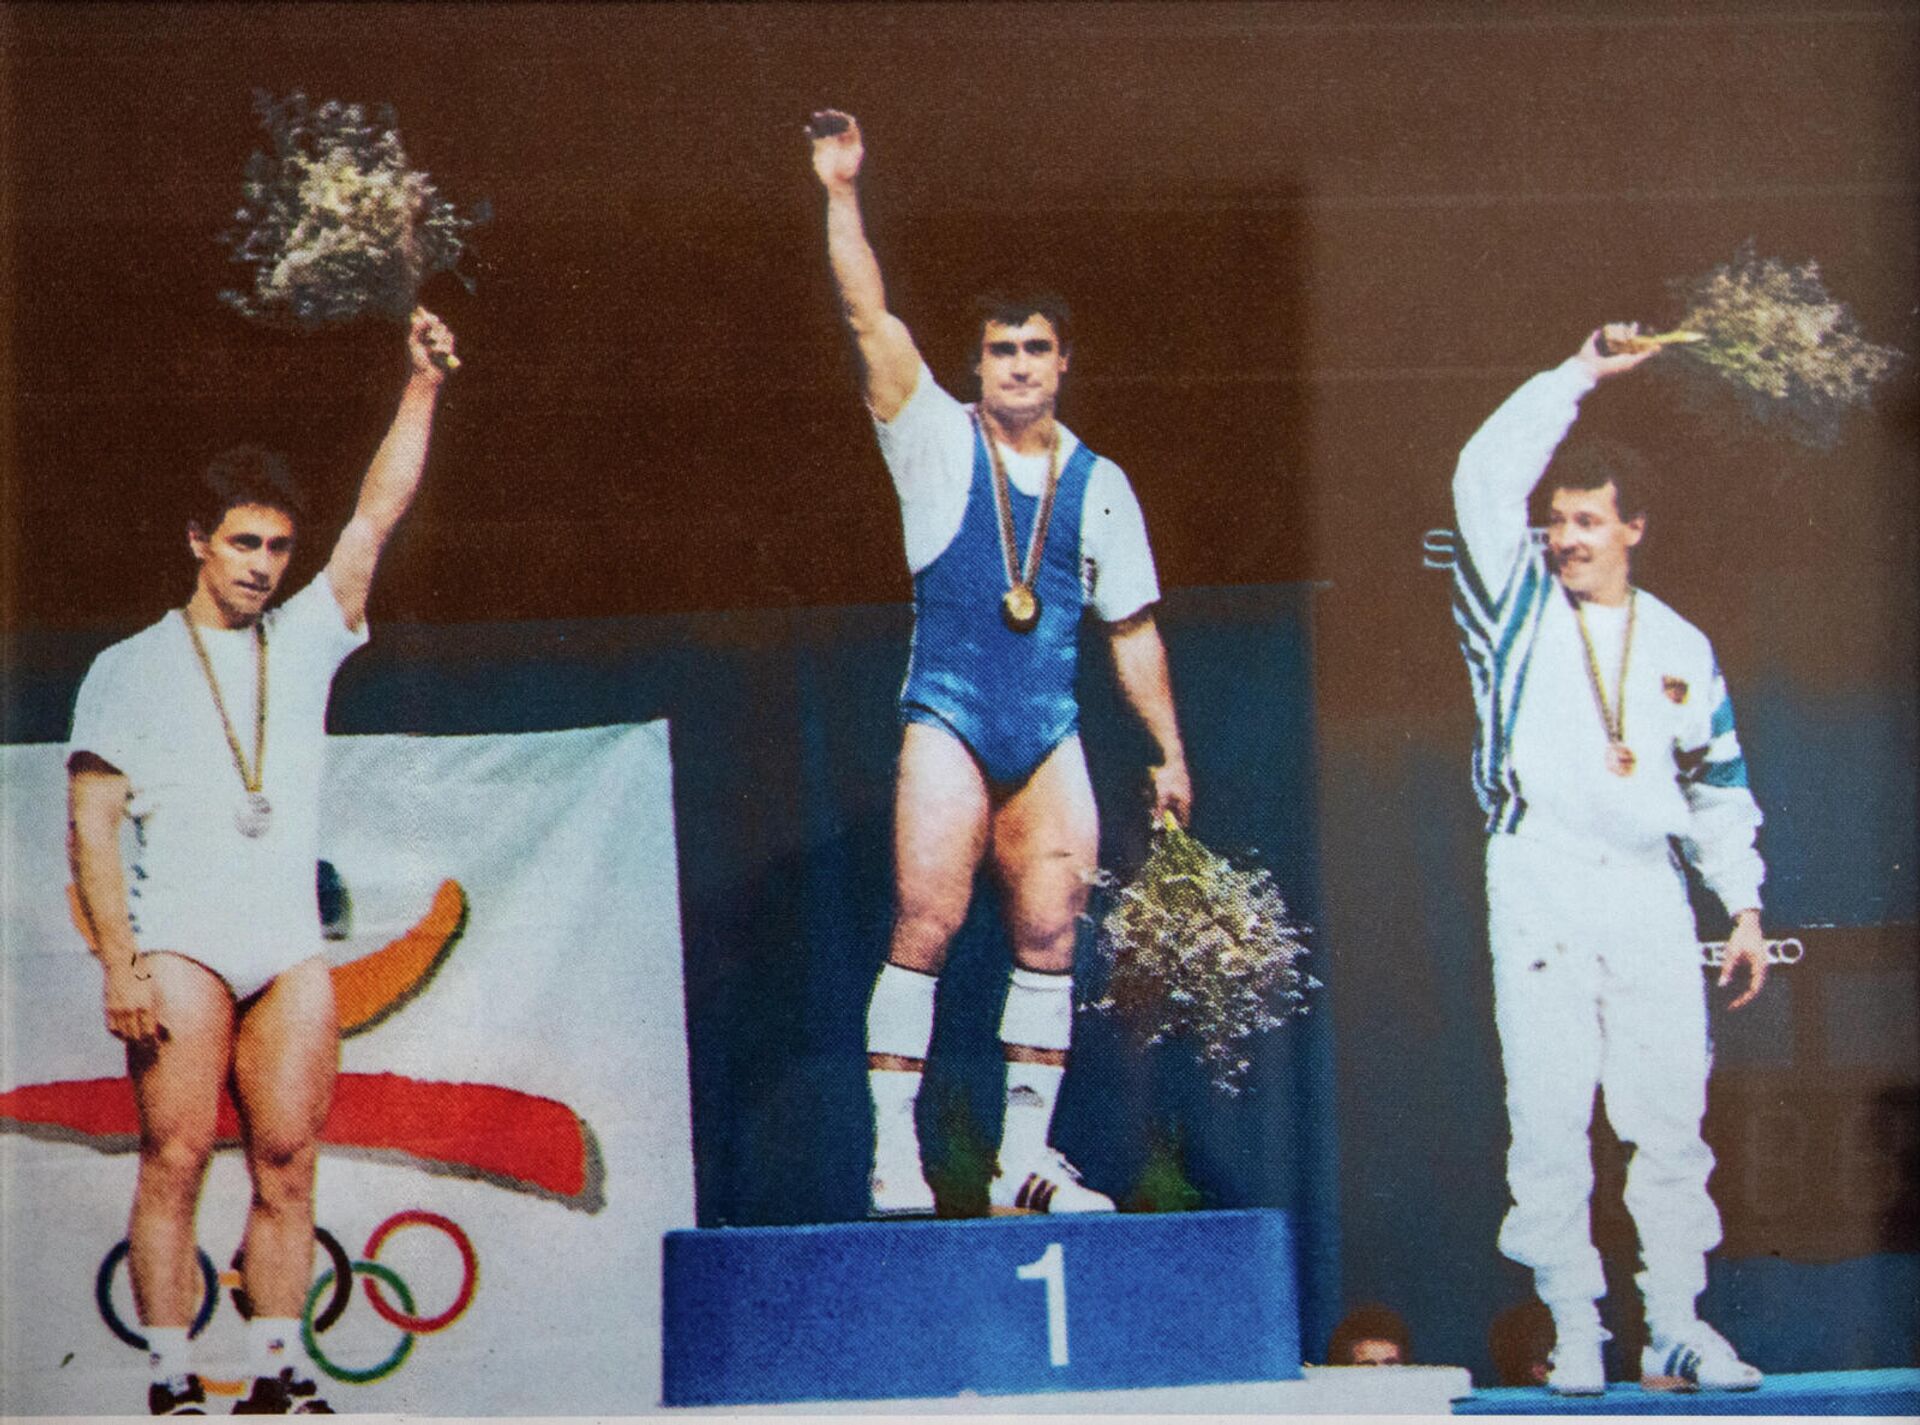 Իսրայել Միլիտոսյանը Բարսելոնայի 20-րդ ամառային Օլիմպիական խաղերի պատվո պատվանդանին, 1992թ. - Sputnik Արմենիա, 1920, 16.12.2021